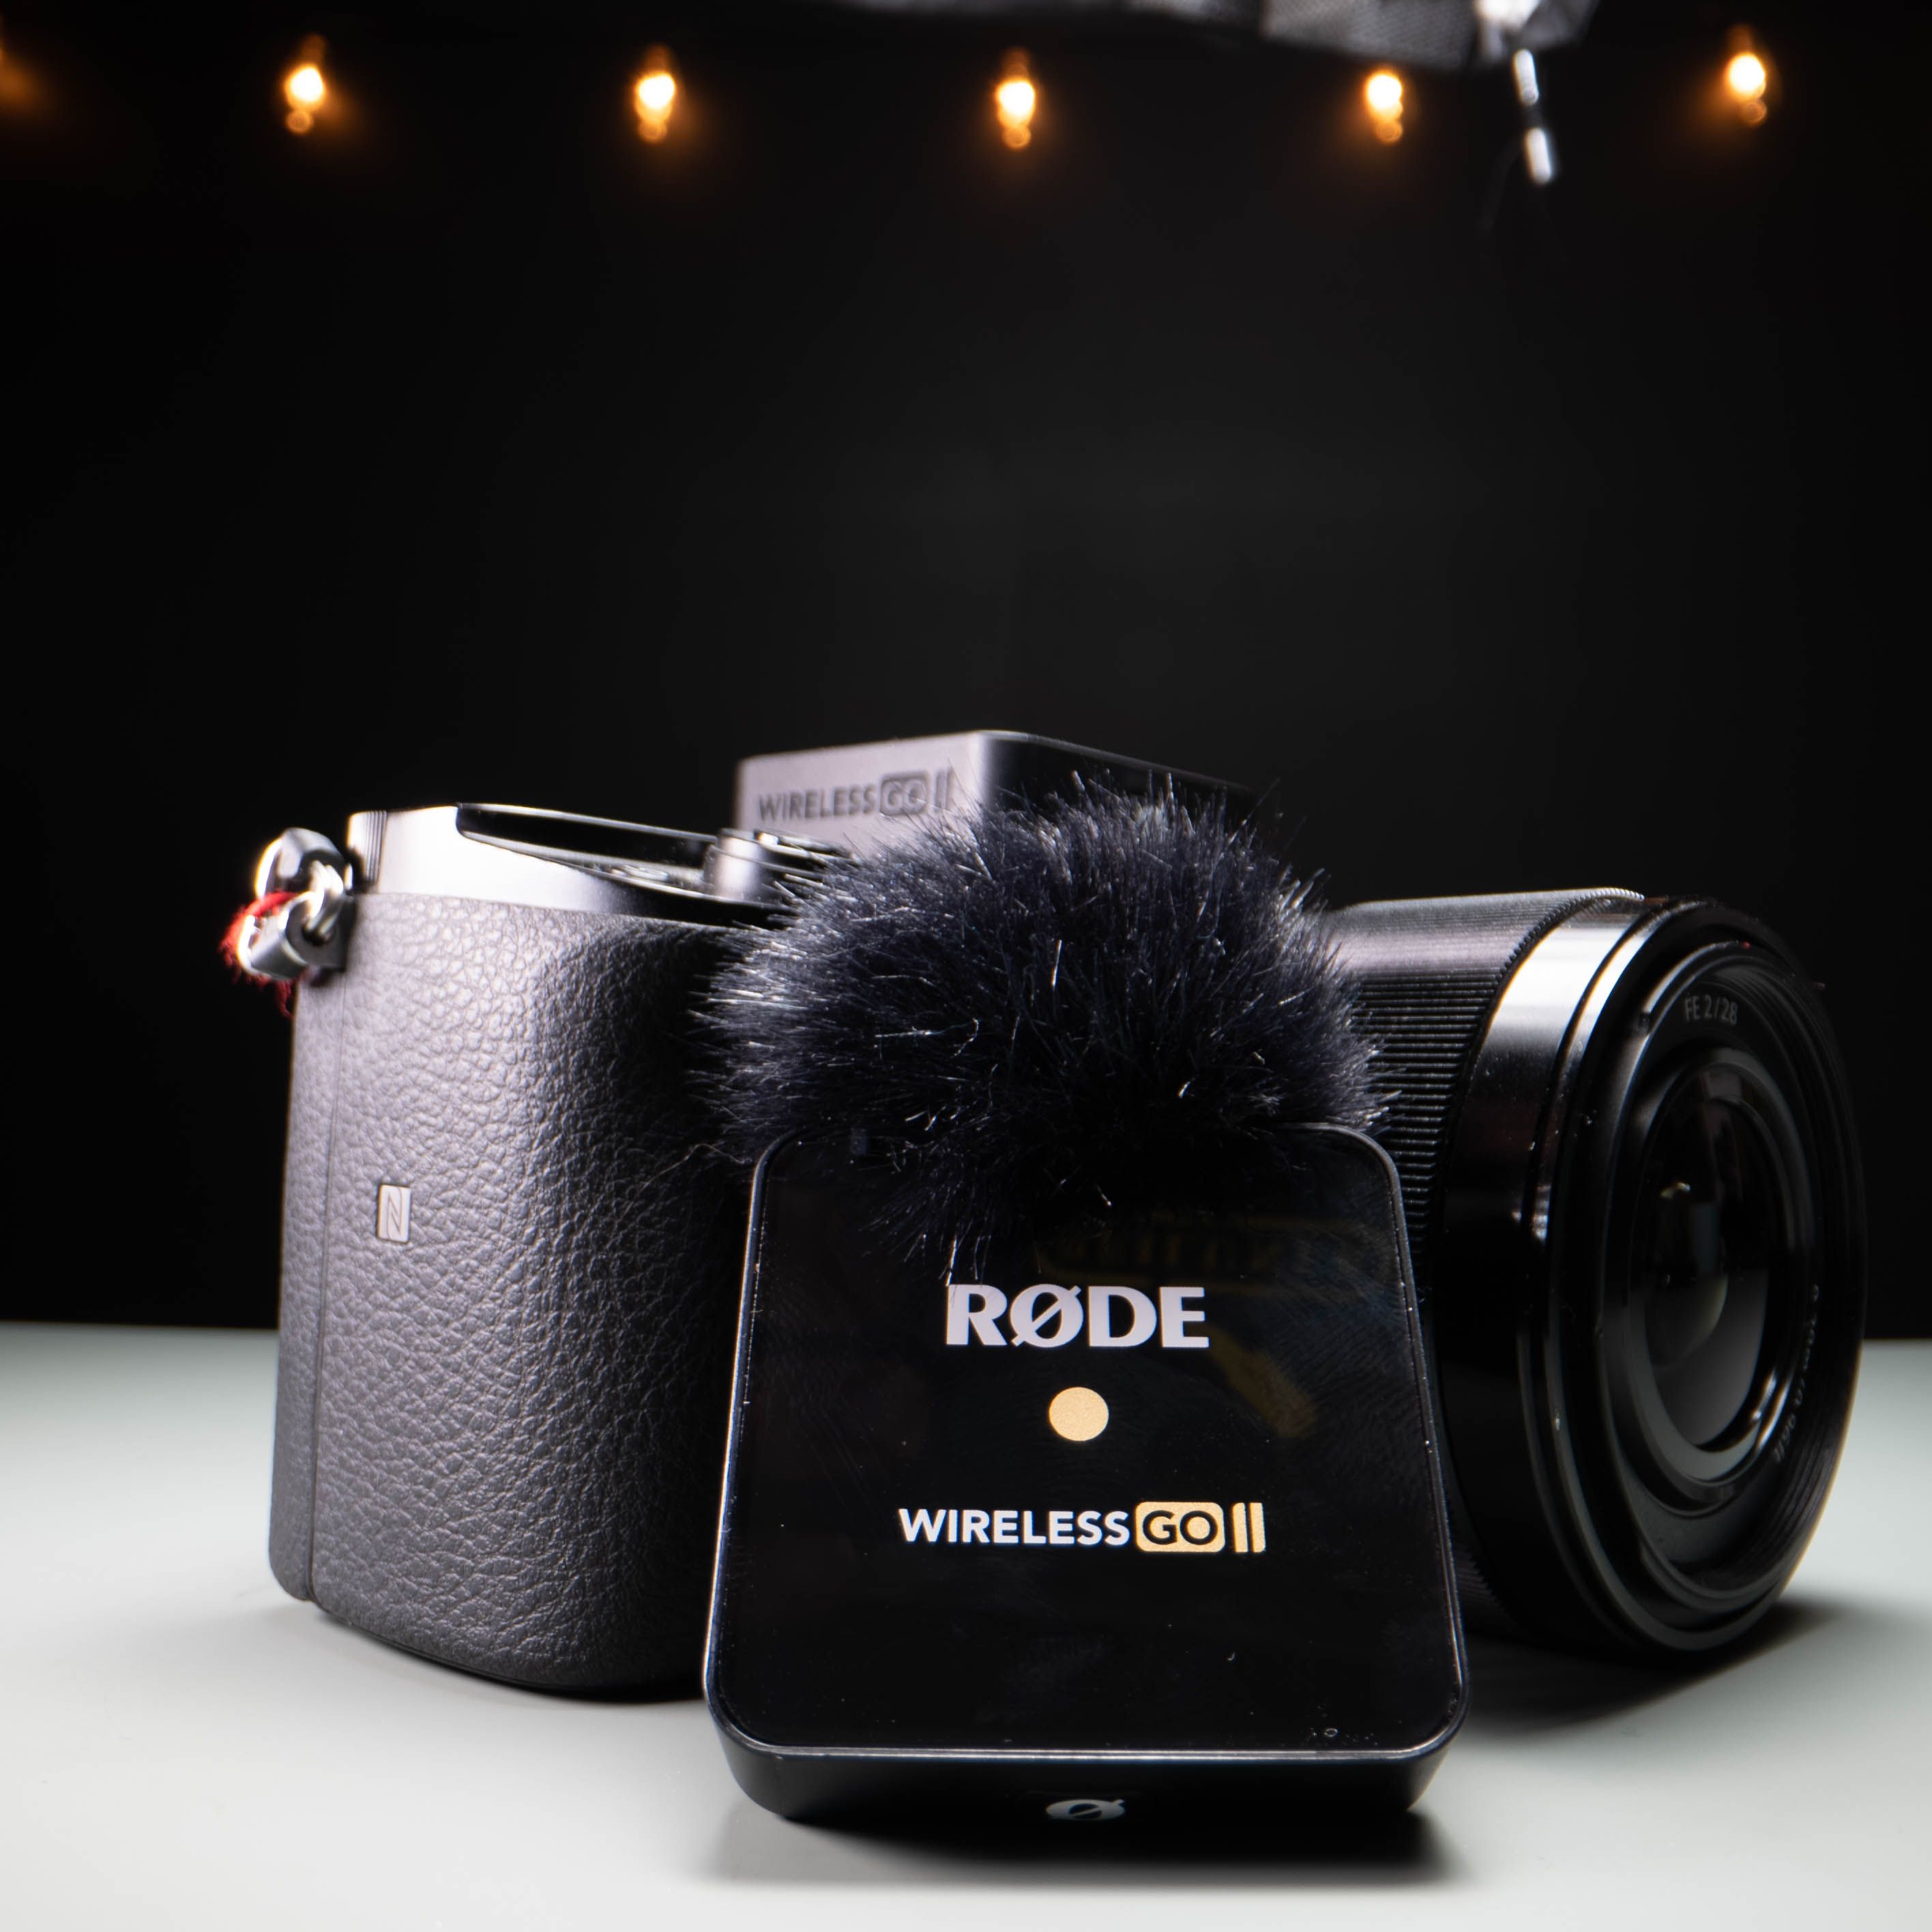 Rode Wireless Go II 21 - Rode Wireless Go II Review: più di un aggiornamento. È un punto di svolta